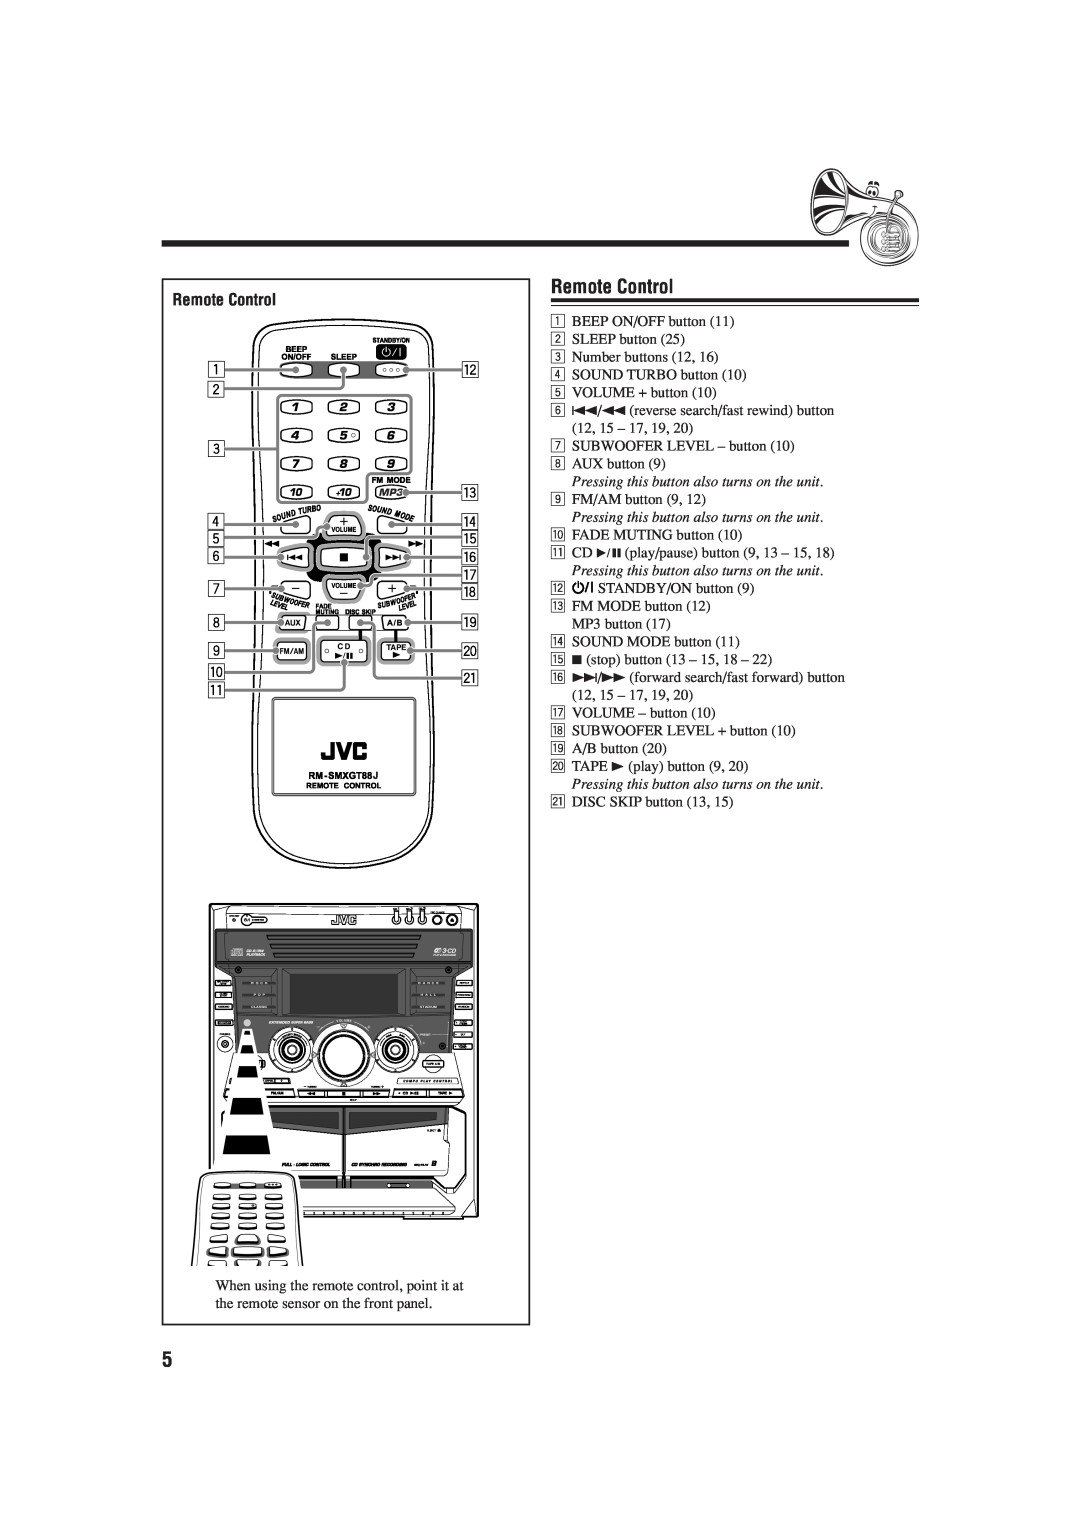 JVC SP-MXGA77, MX-GA77, MX-GT88, SP-MXGT88 manual Remote Control 